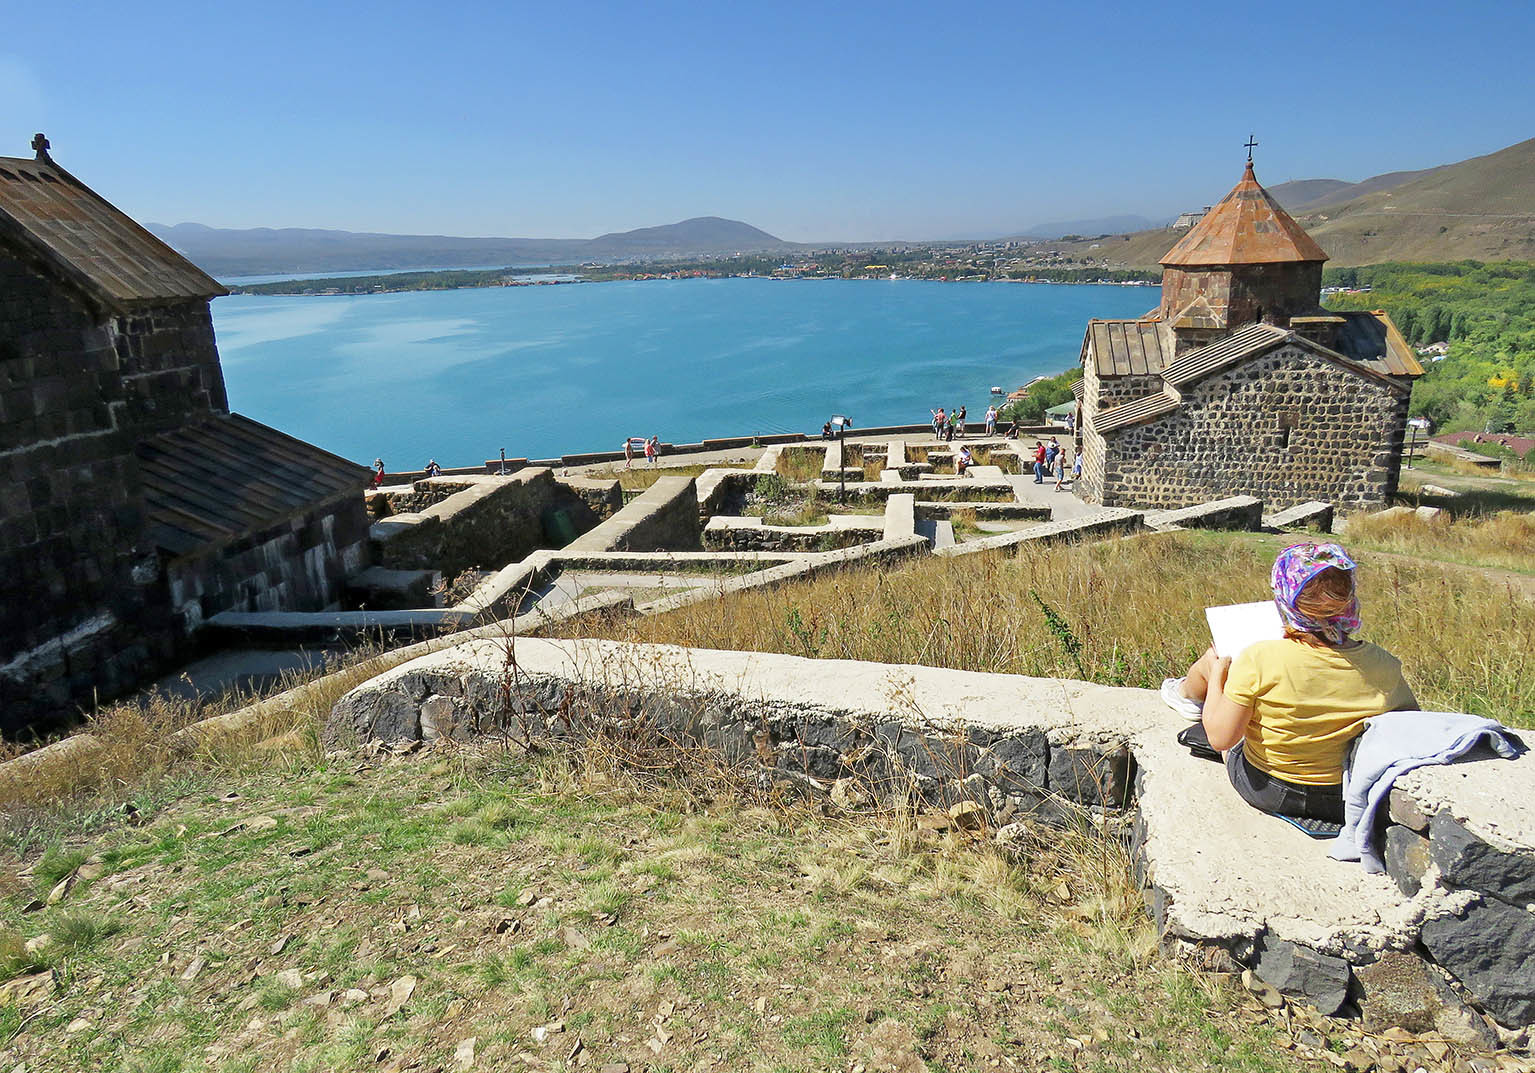 Кредит севан. Севан город монастырь. Крепость великанов Севан. Озеро Севан. Святой Эчмиадзин озеро Севан Армения.